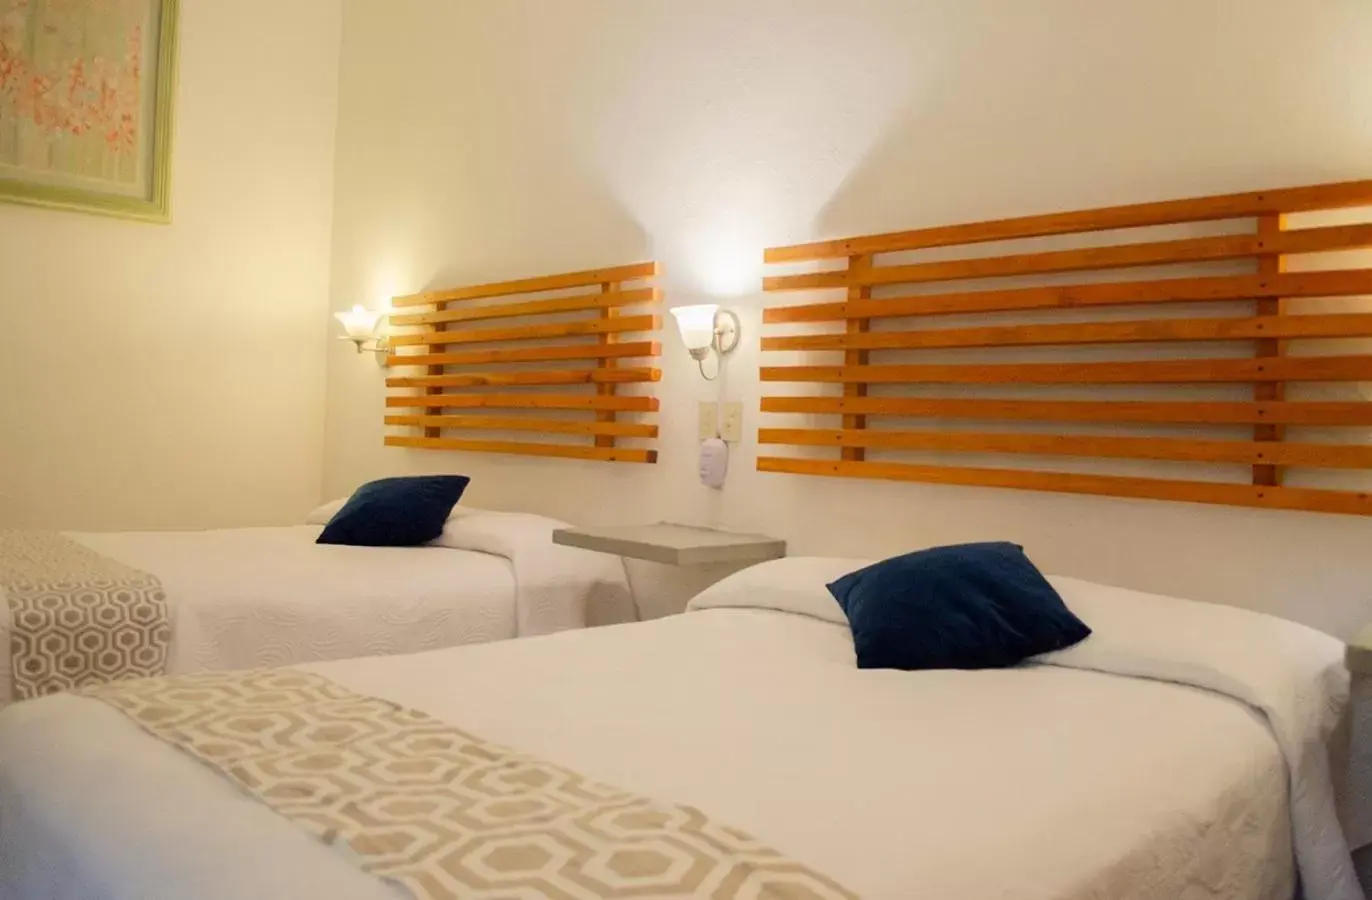 Bed in Vf Hotel